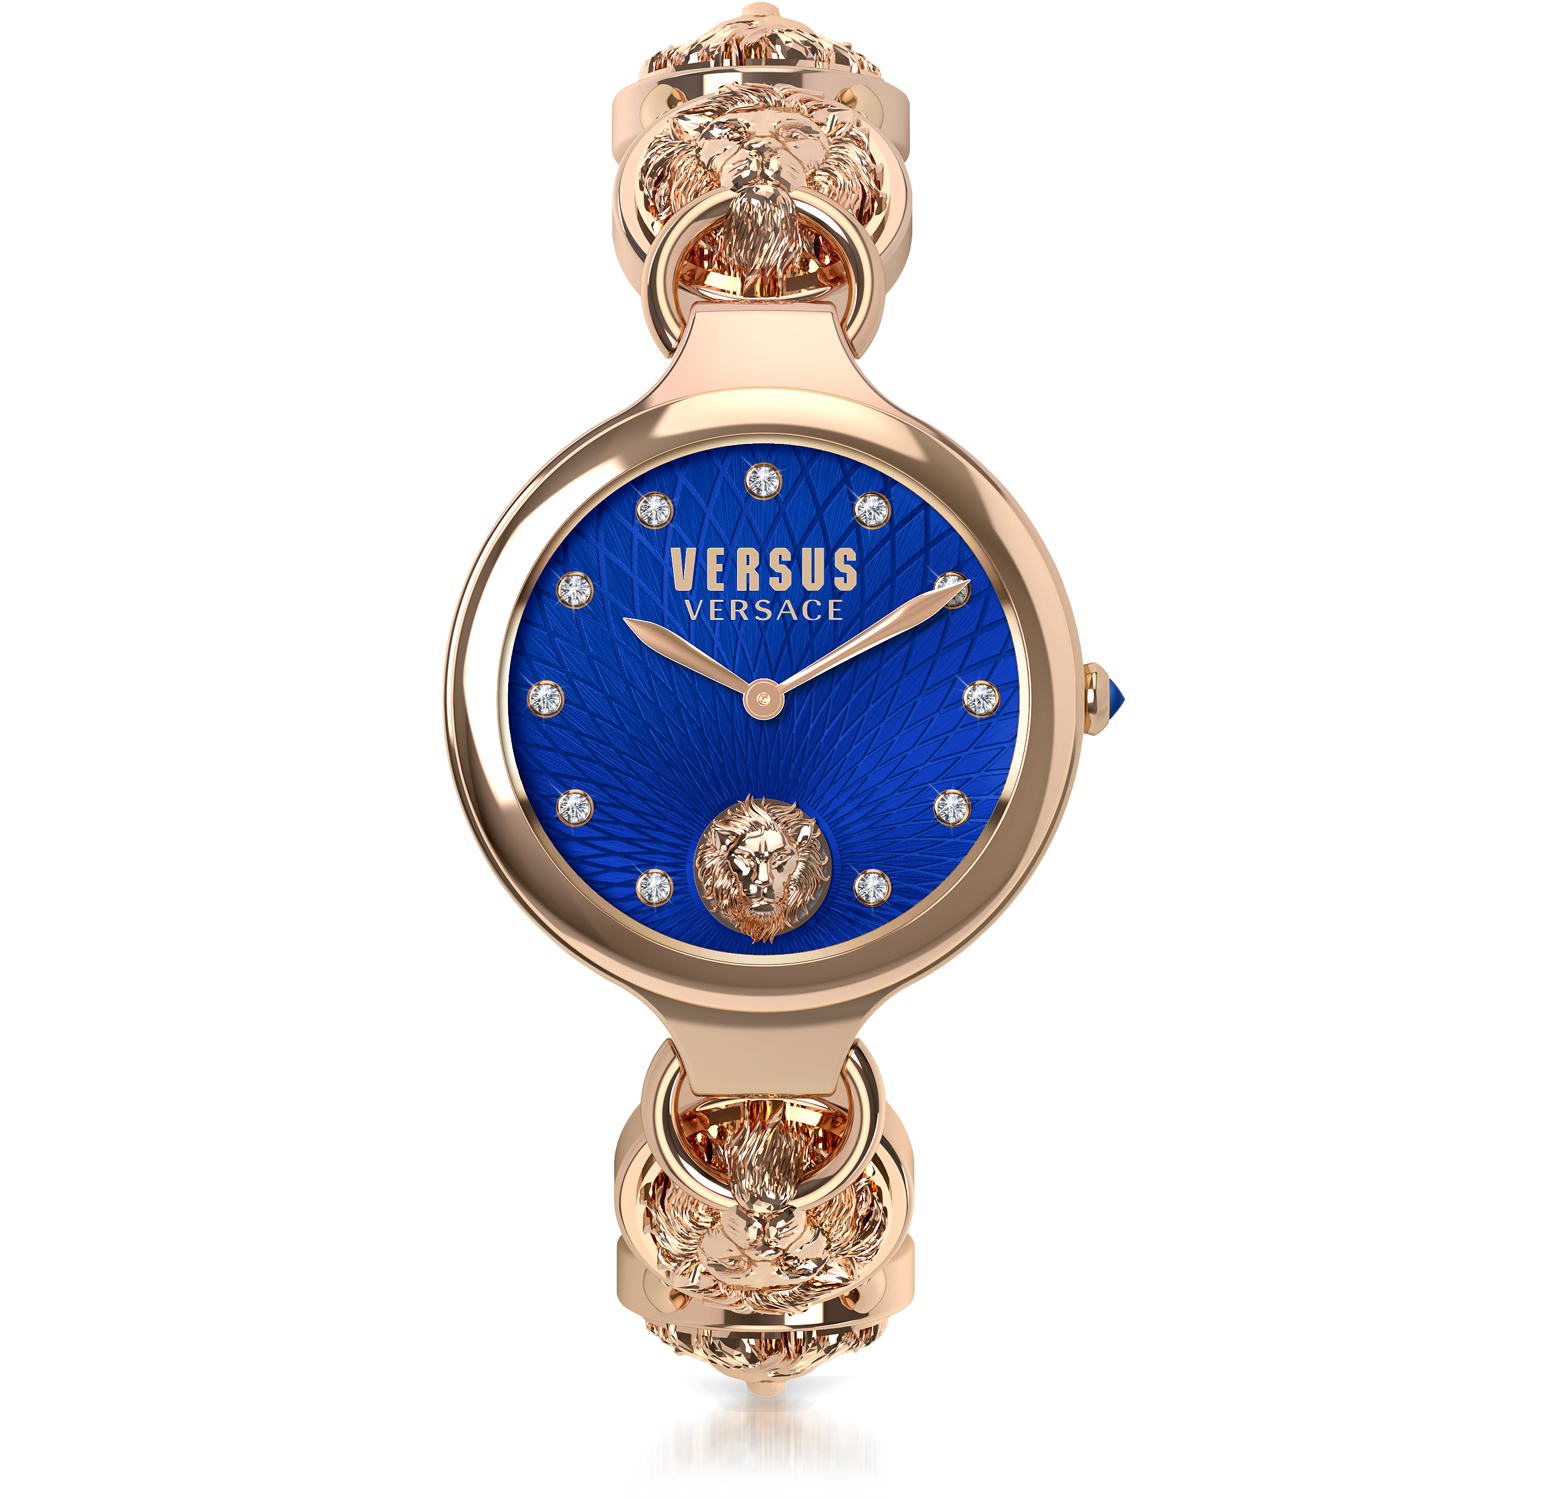 versace versus watch women's blue